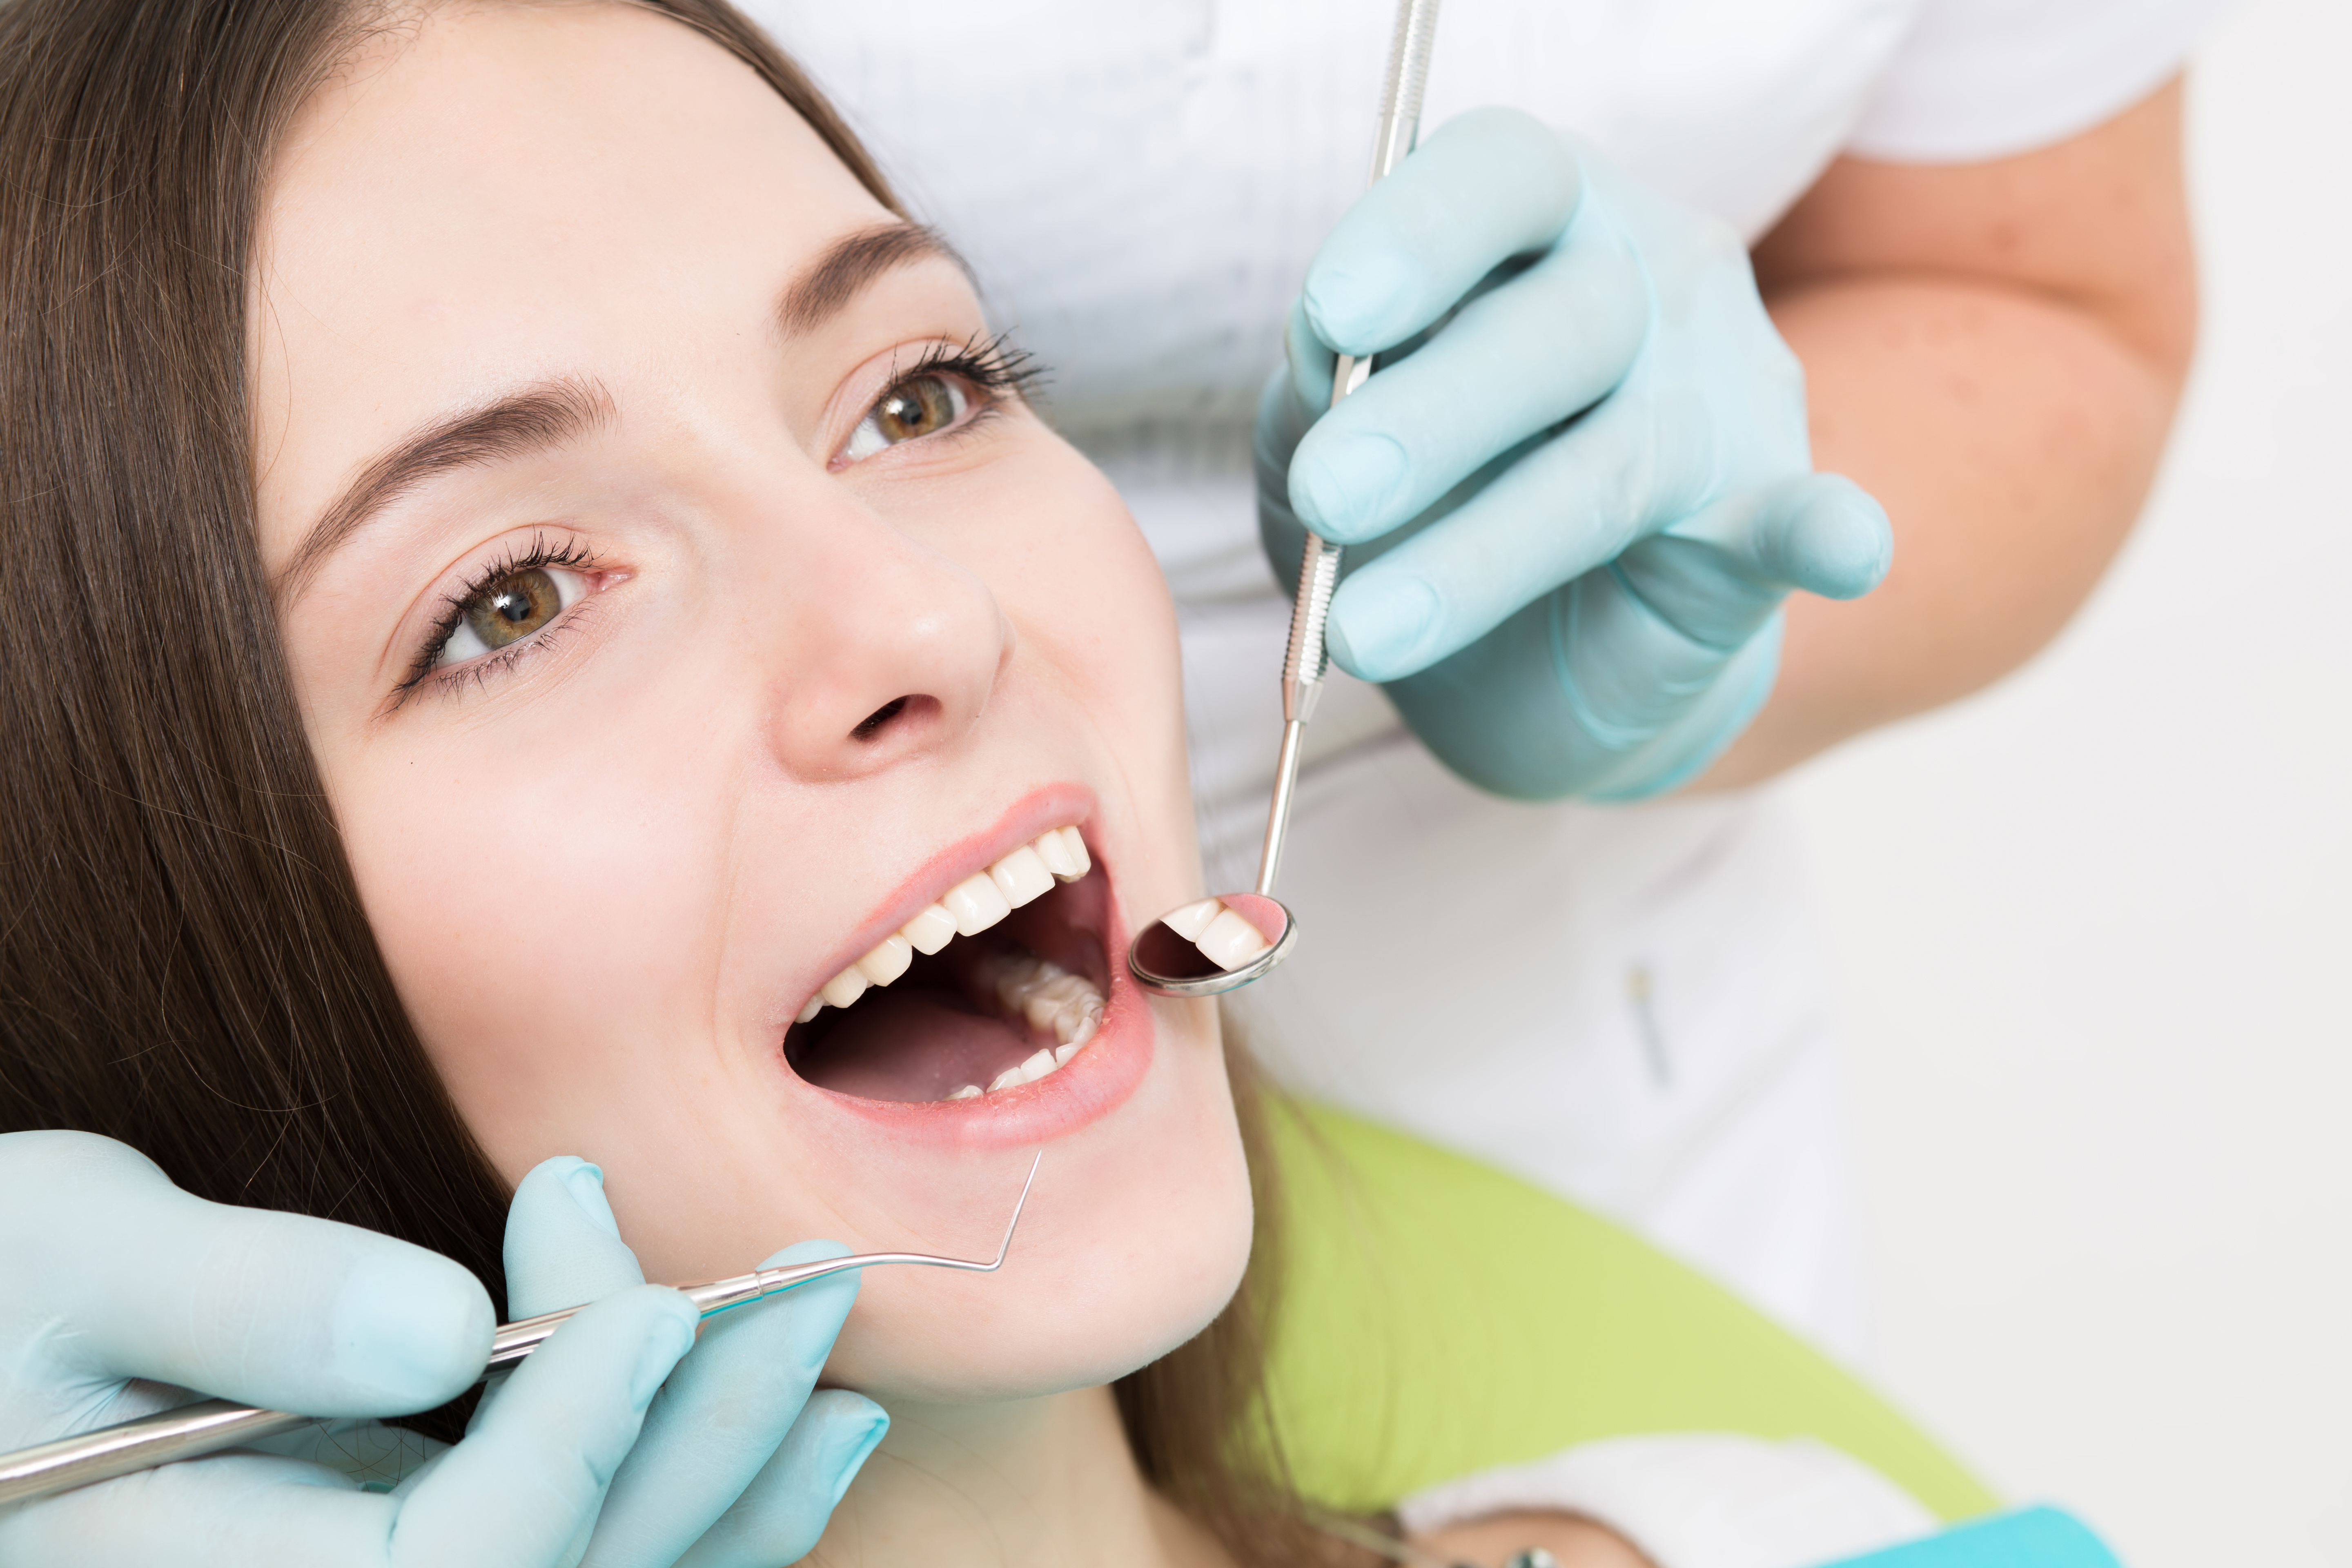 Полость рта для стоматолога. Профессиональная гигиена полости. Профессиональная гигиена полости рта и зубов. Гигиена полости рта в стоматологии.